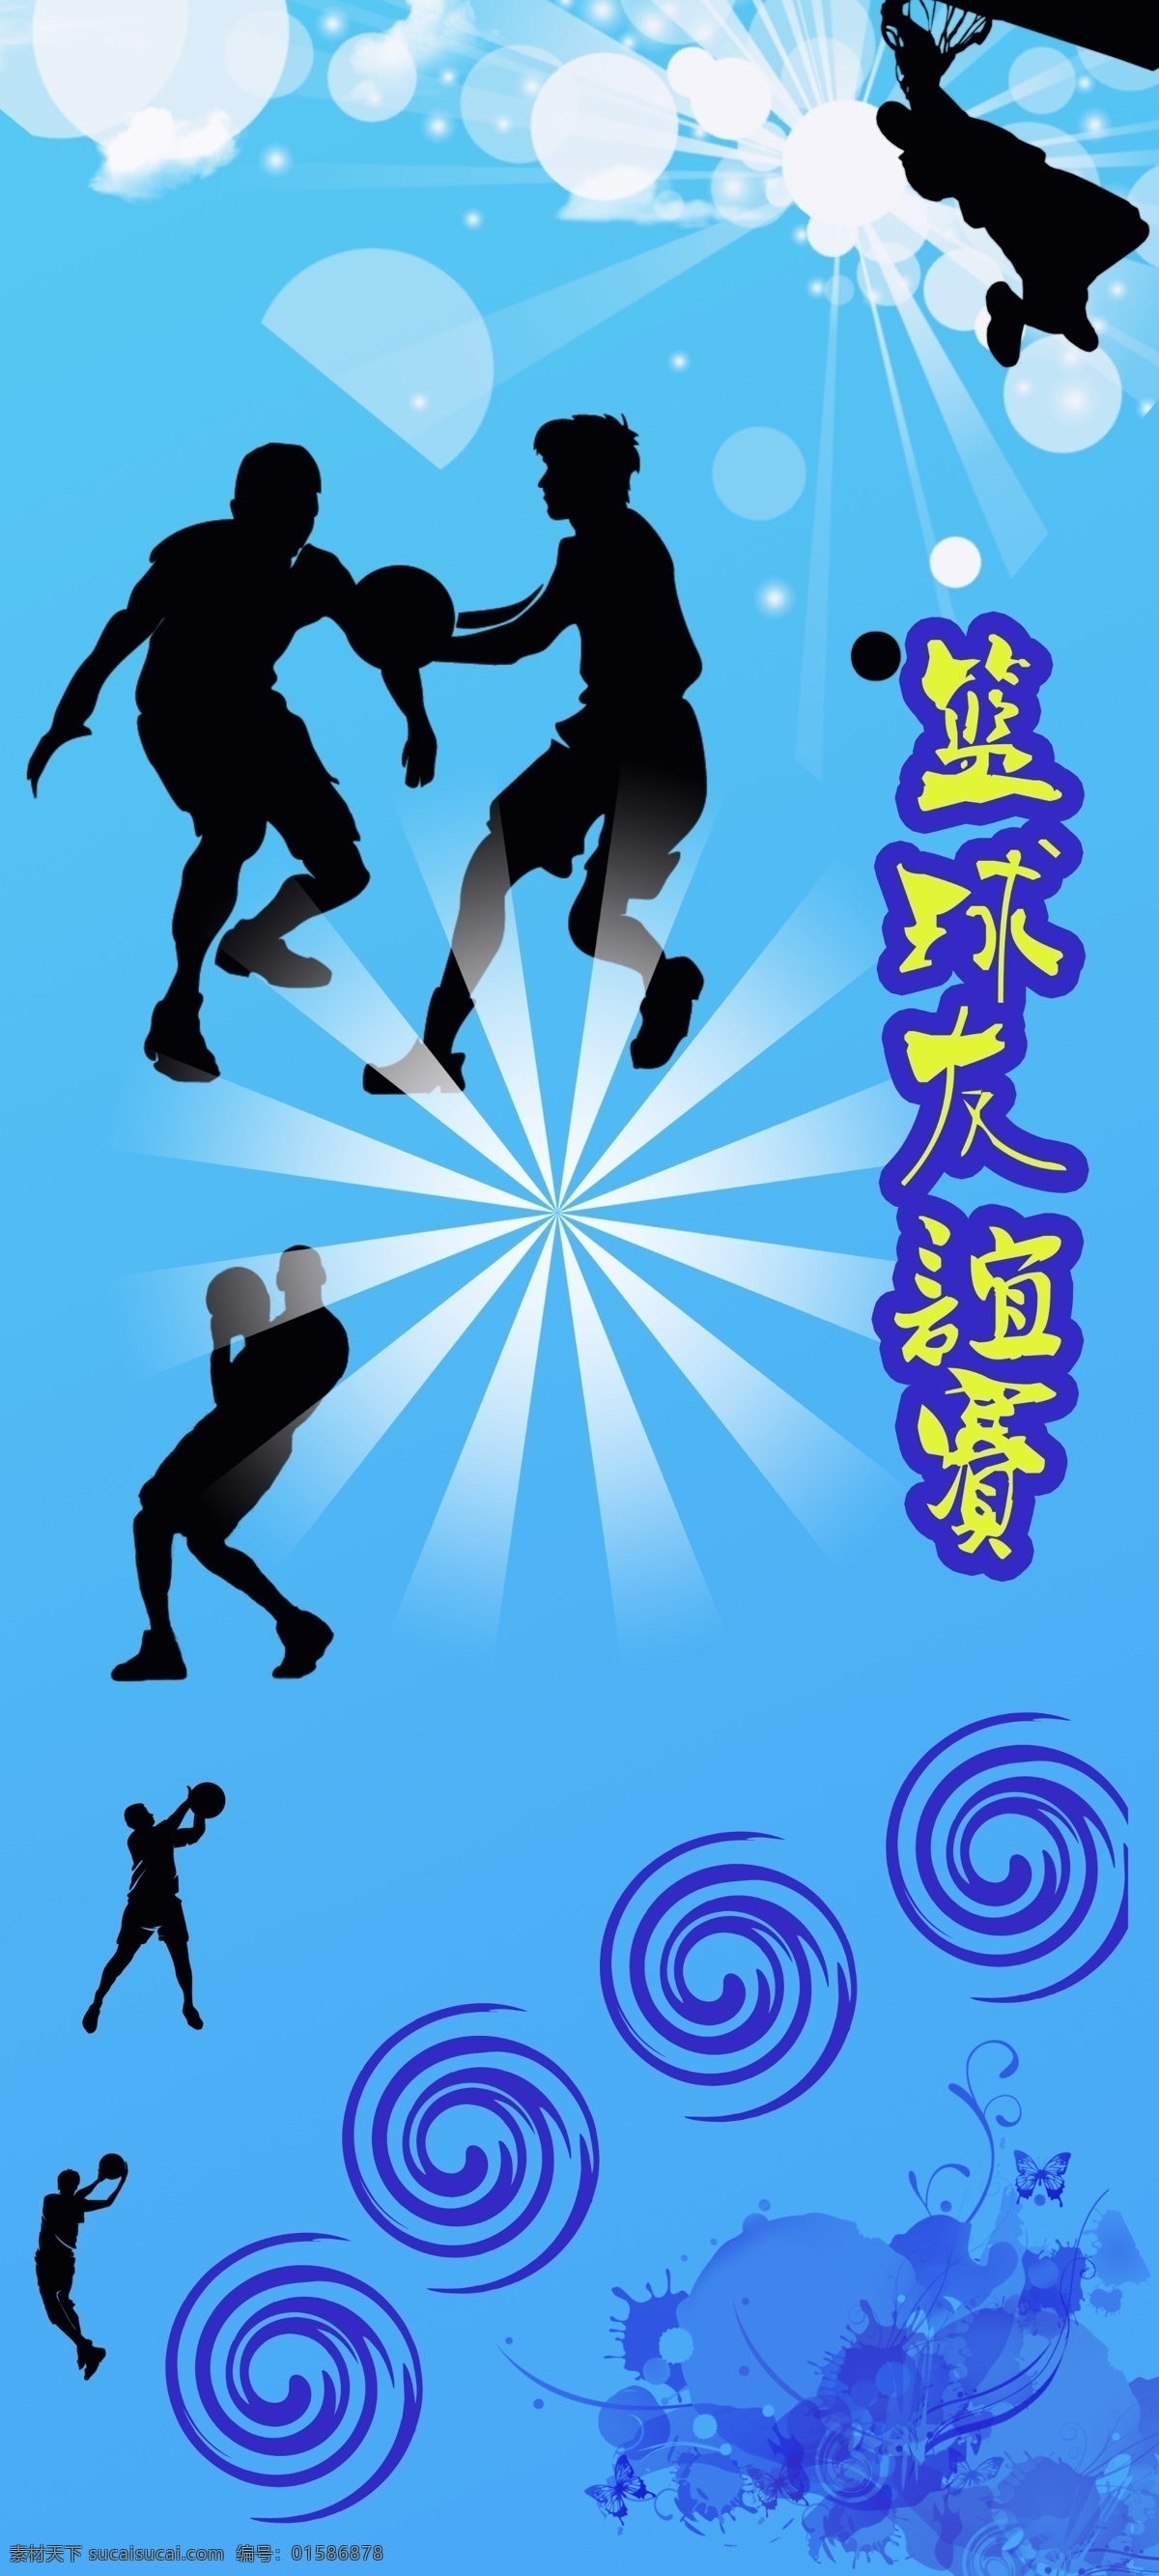 广告设计模板 蓝色 篮球 篮球赛 篮球赛海报 人物剪影 源文件 海报 模板下载